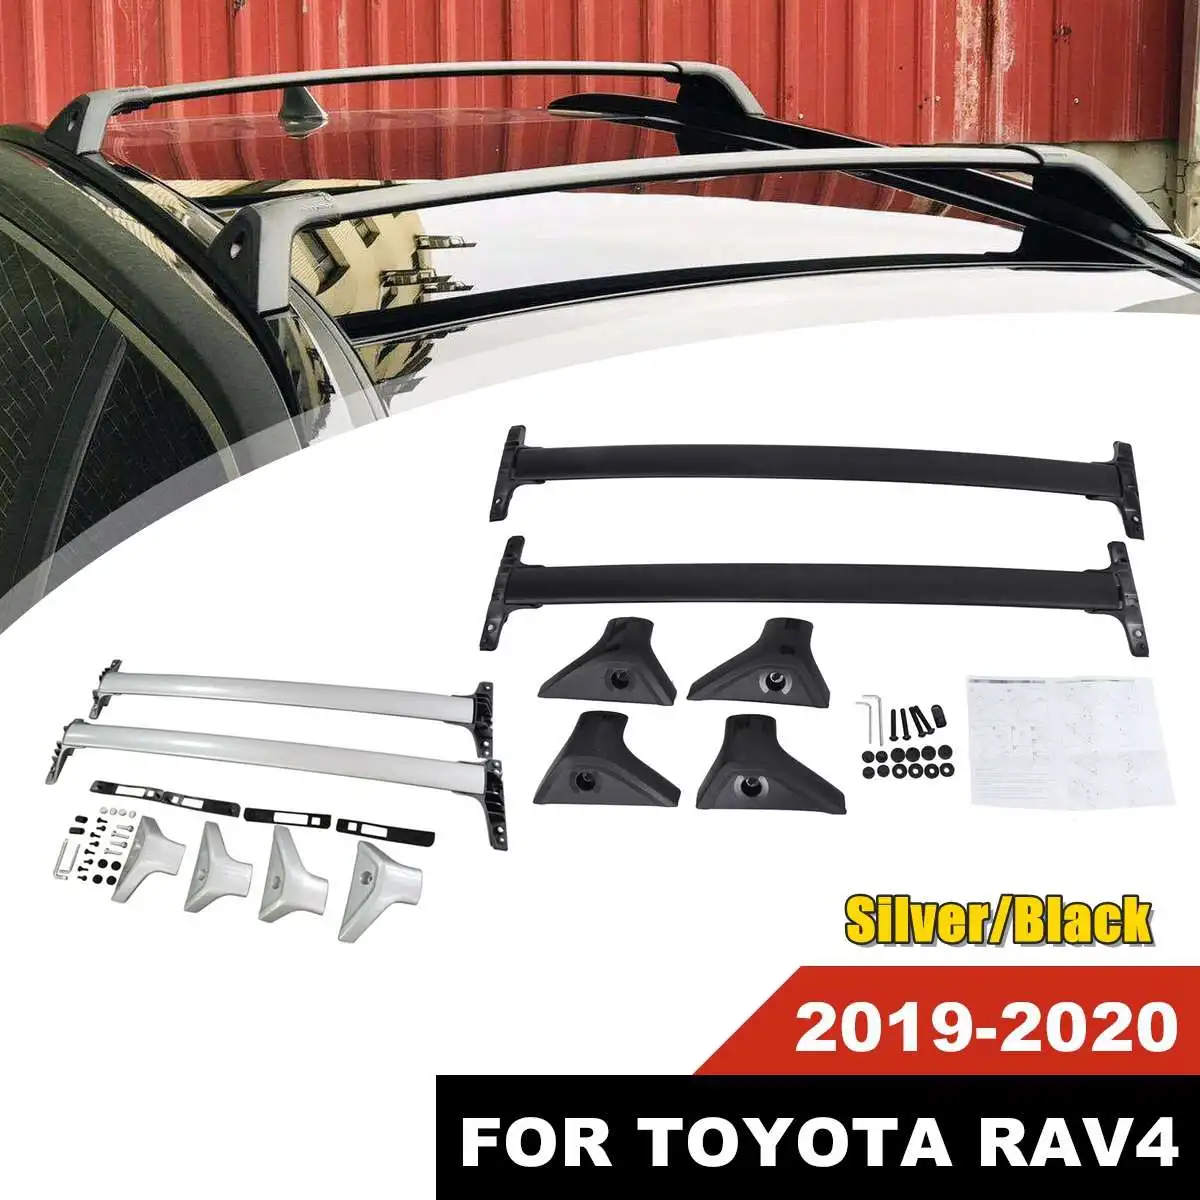 1 шт. серебристый/черный алюминиевый багажник на крышу для Toyota RAV4 американский стиль обновление вашего автомобиля